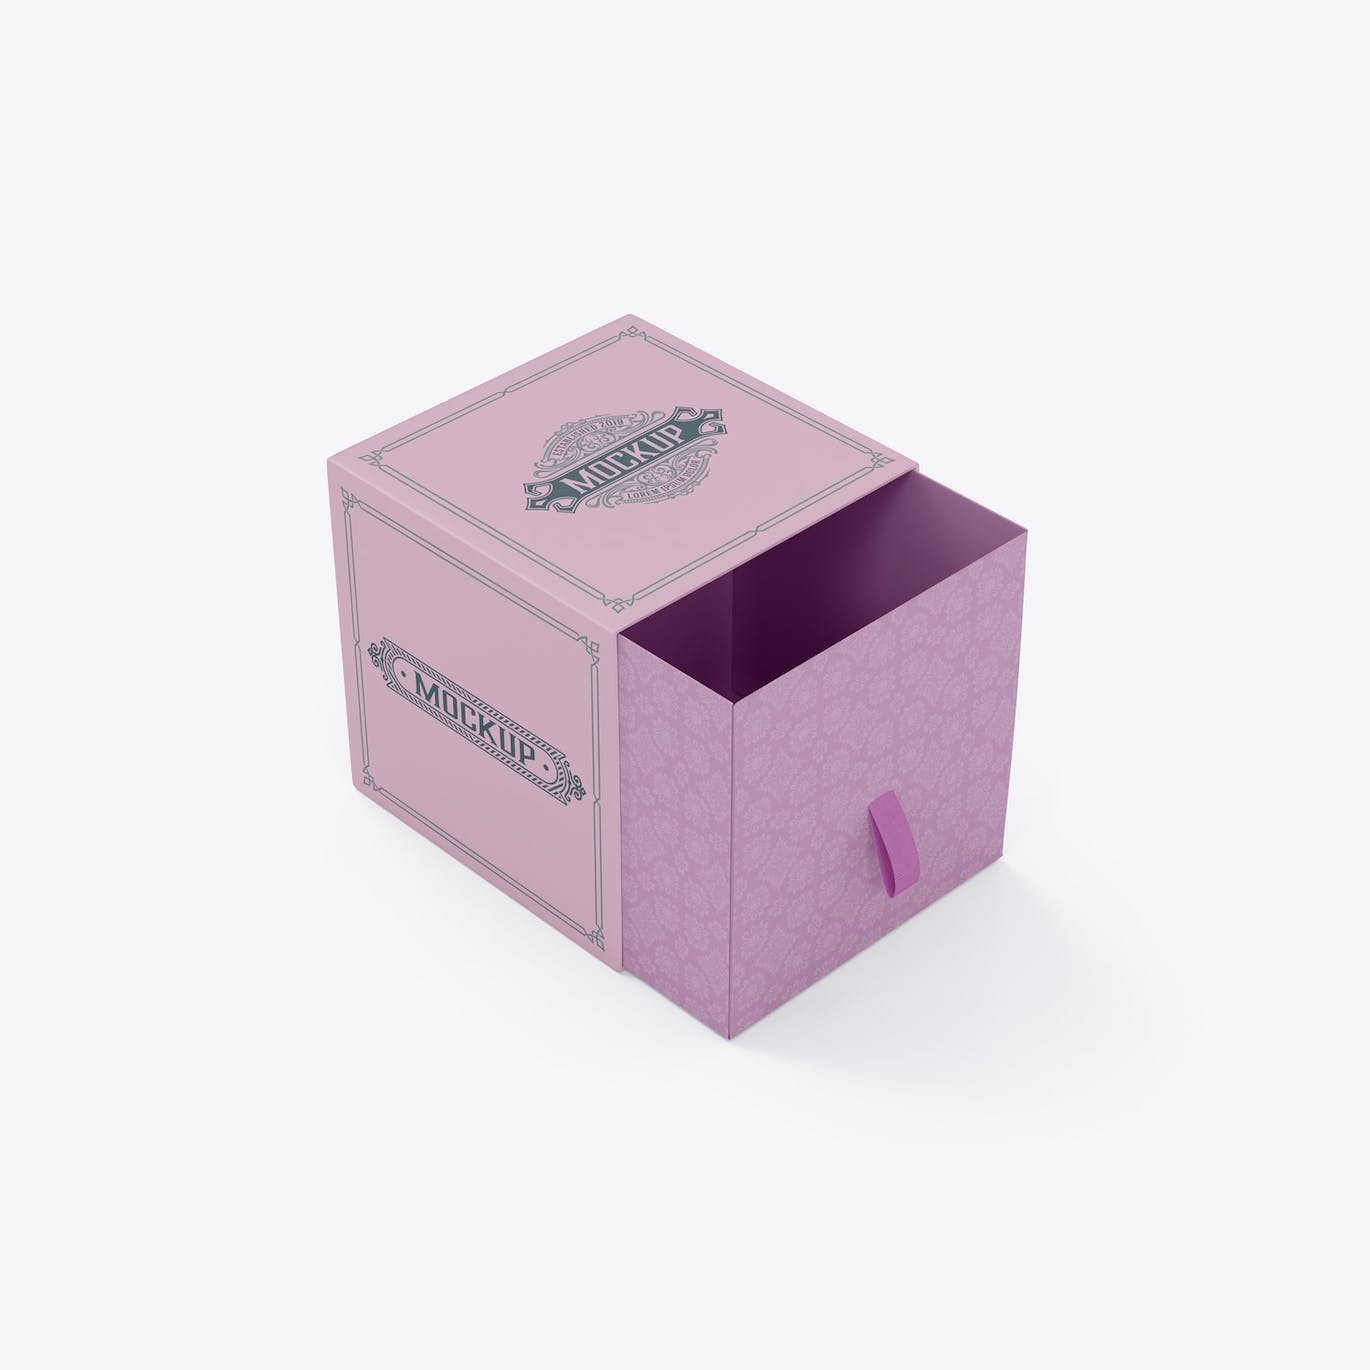 抽屉礼品盒子设计样机 Slide Box Mockup 样机素材 第3张